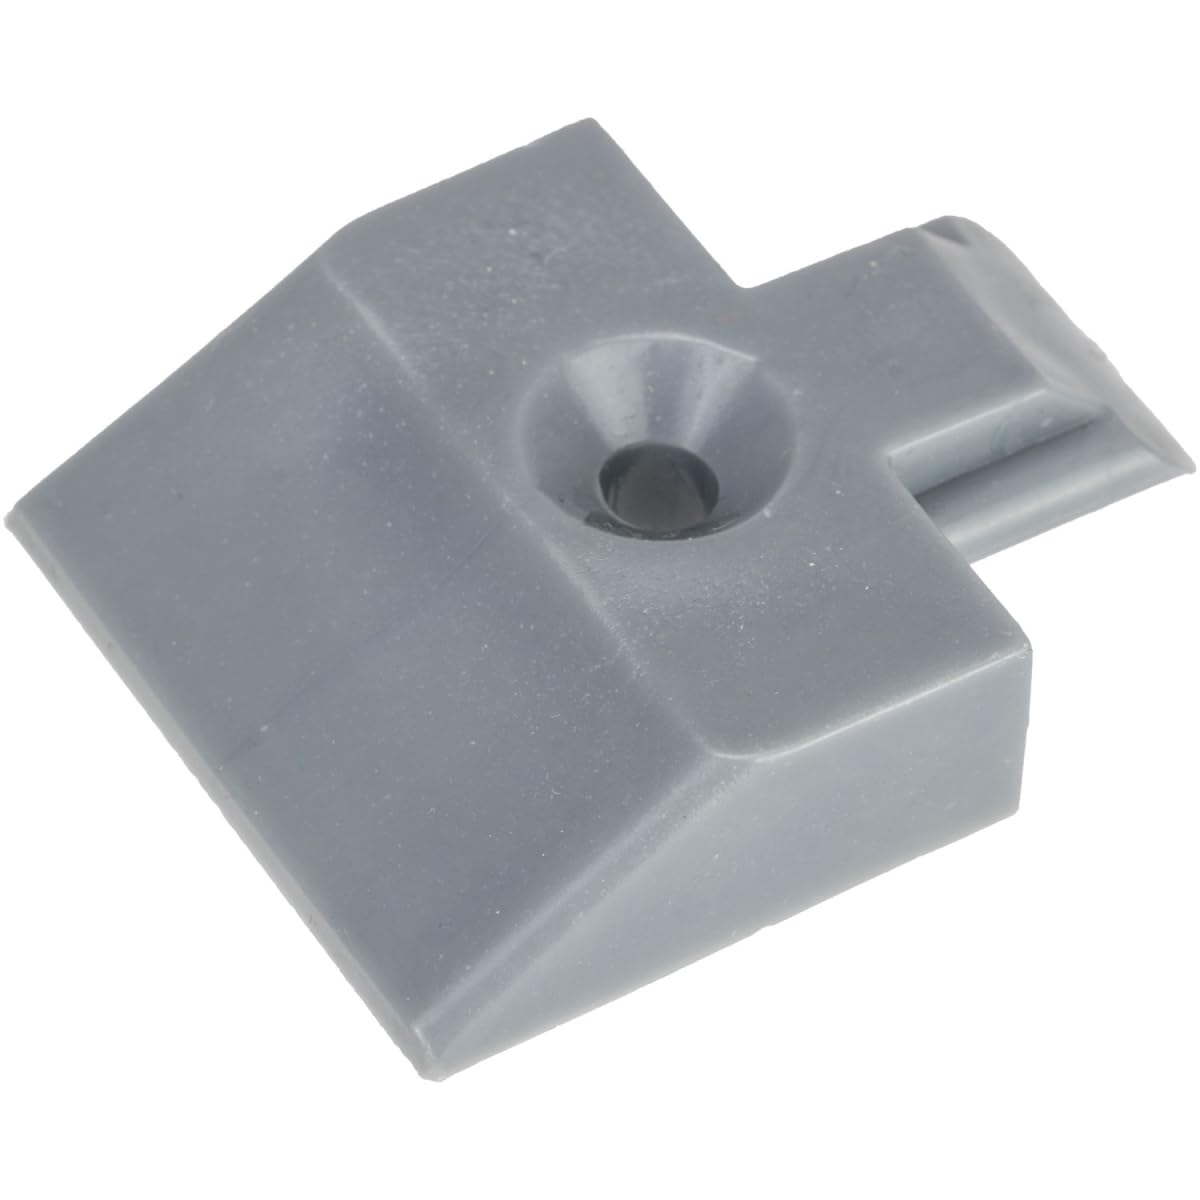 Endkappe für Airlineschiene Einsteckkappe Zurrschiene eckig Kunststoff grau eckige Form (1 Stück) von Safetytex